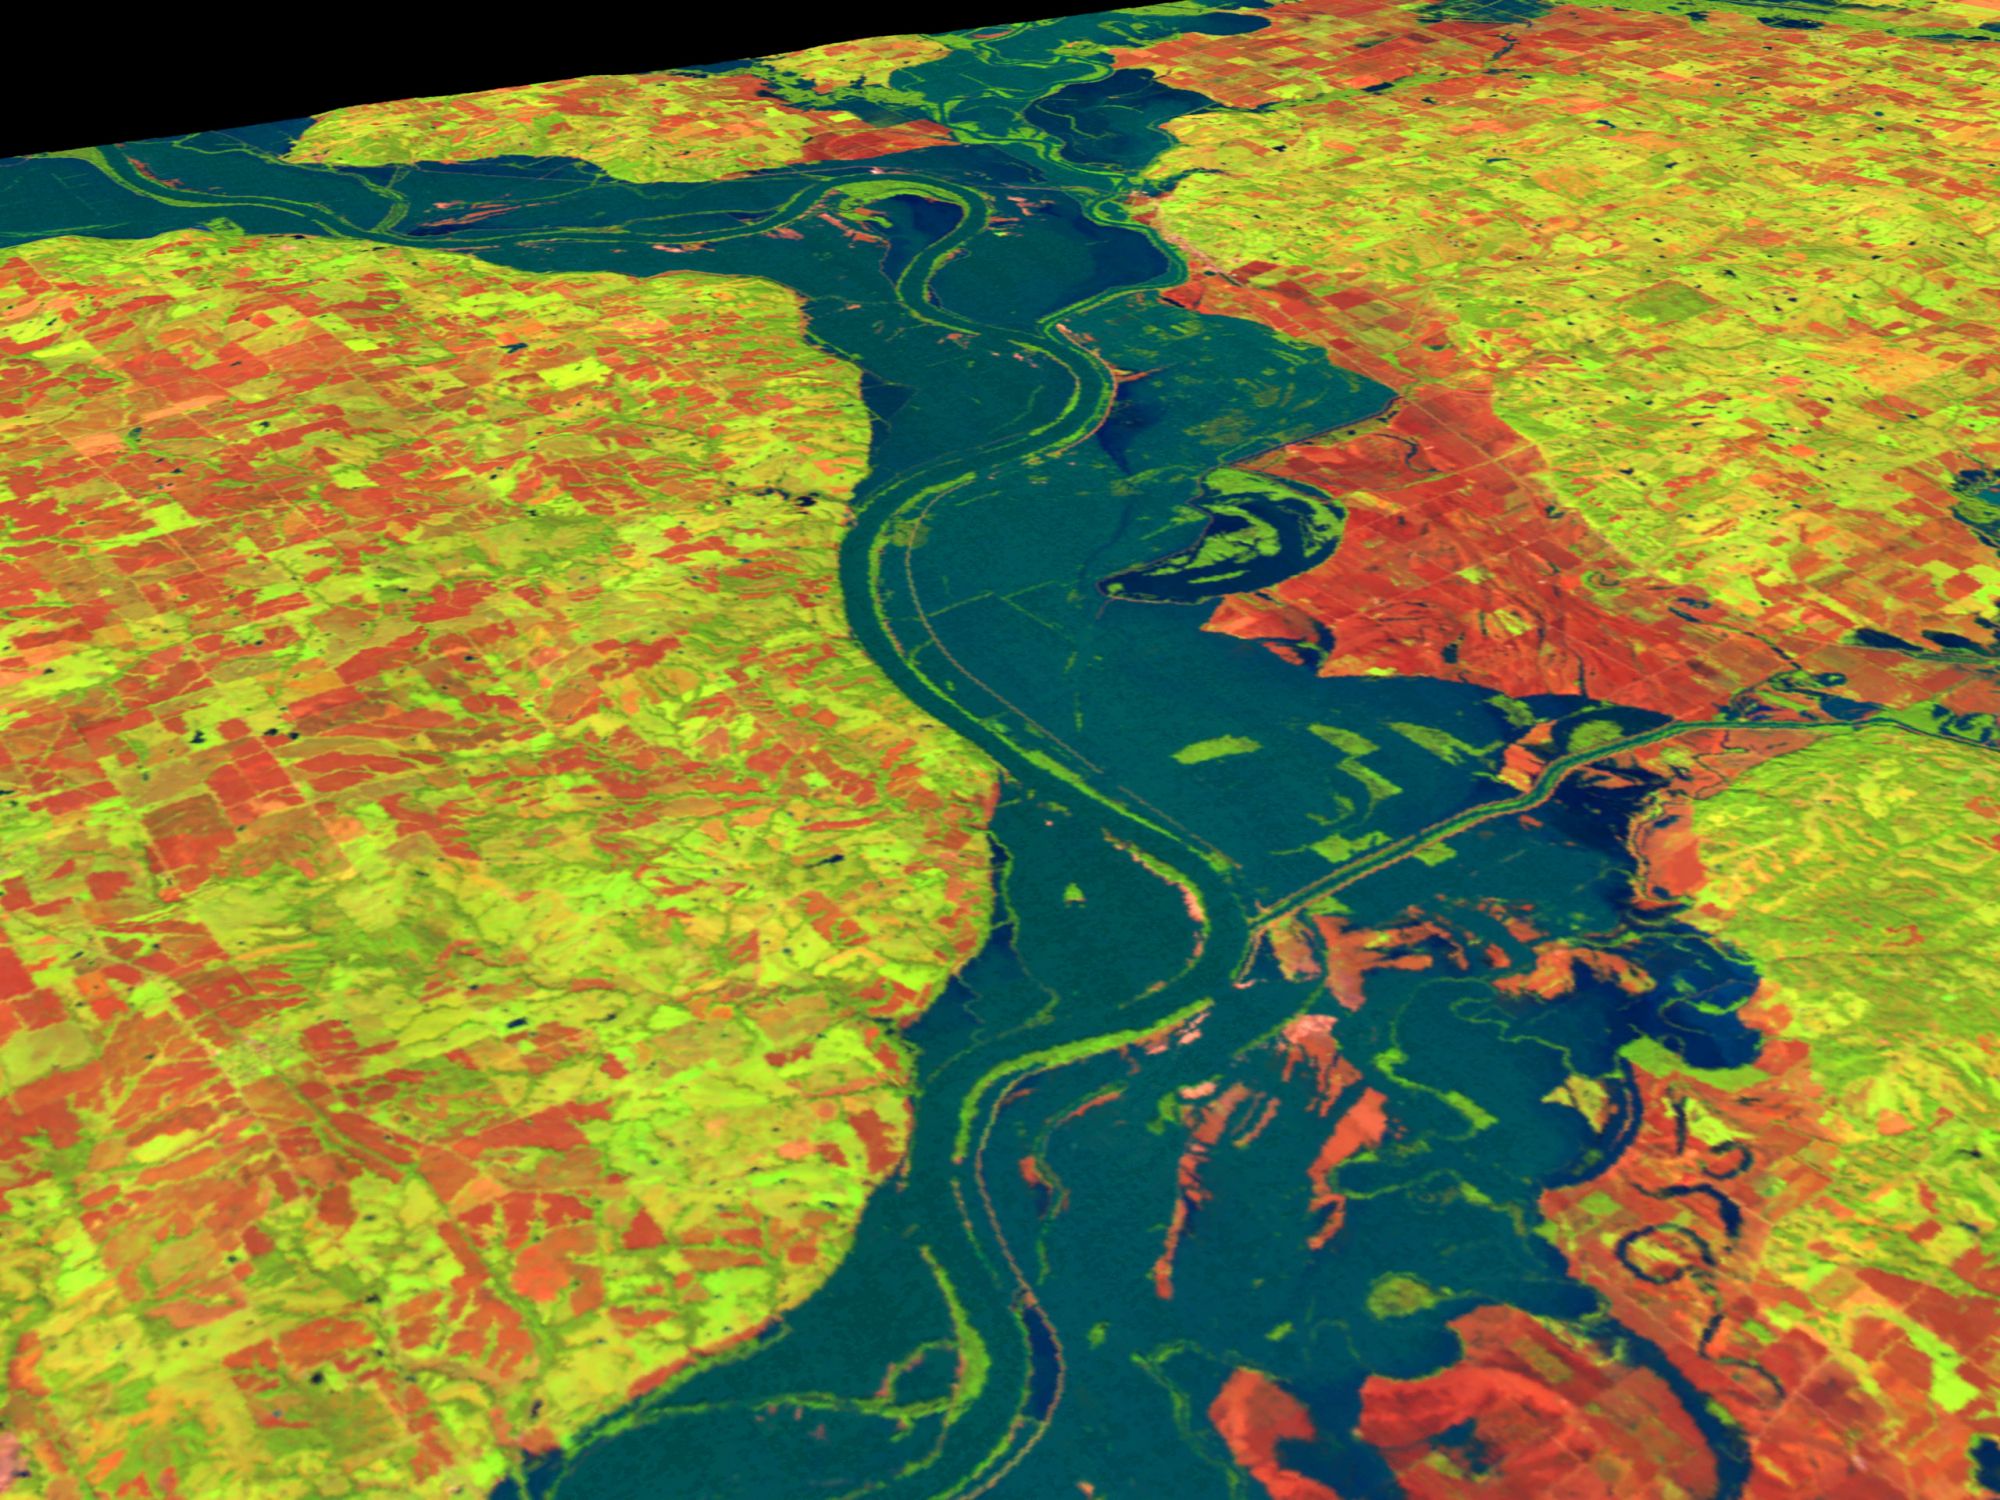 Разлив реки Миссури, США. Трехмерная компьютерная реконструкция по спутниковым данным